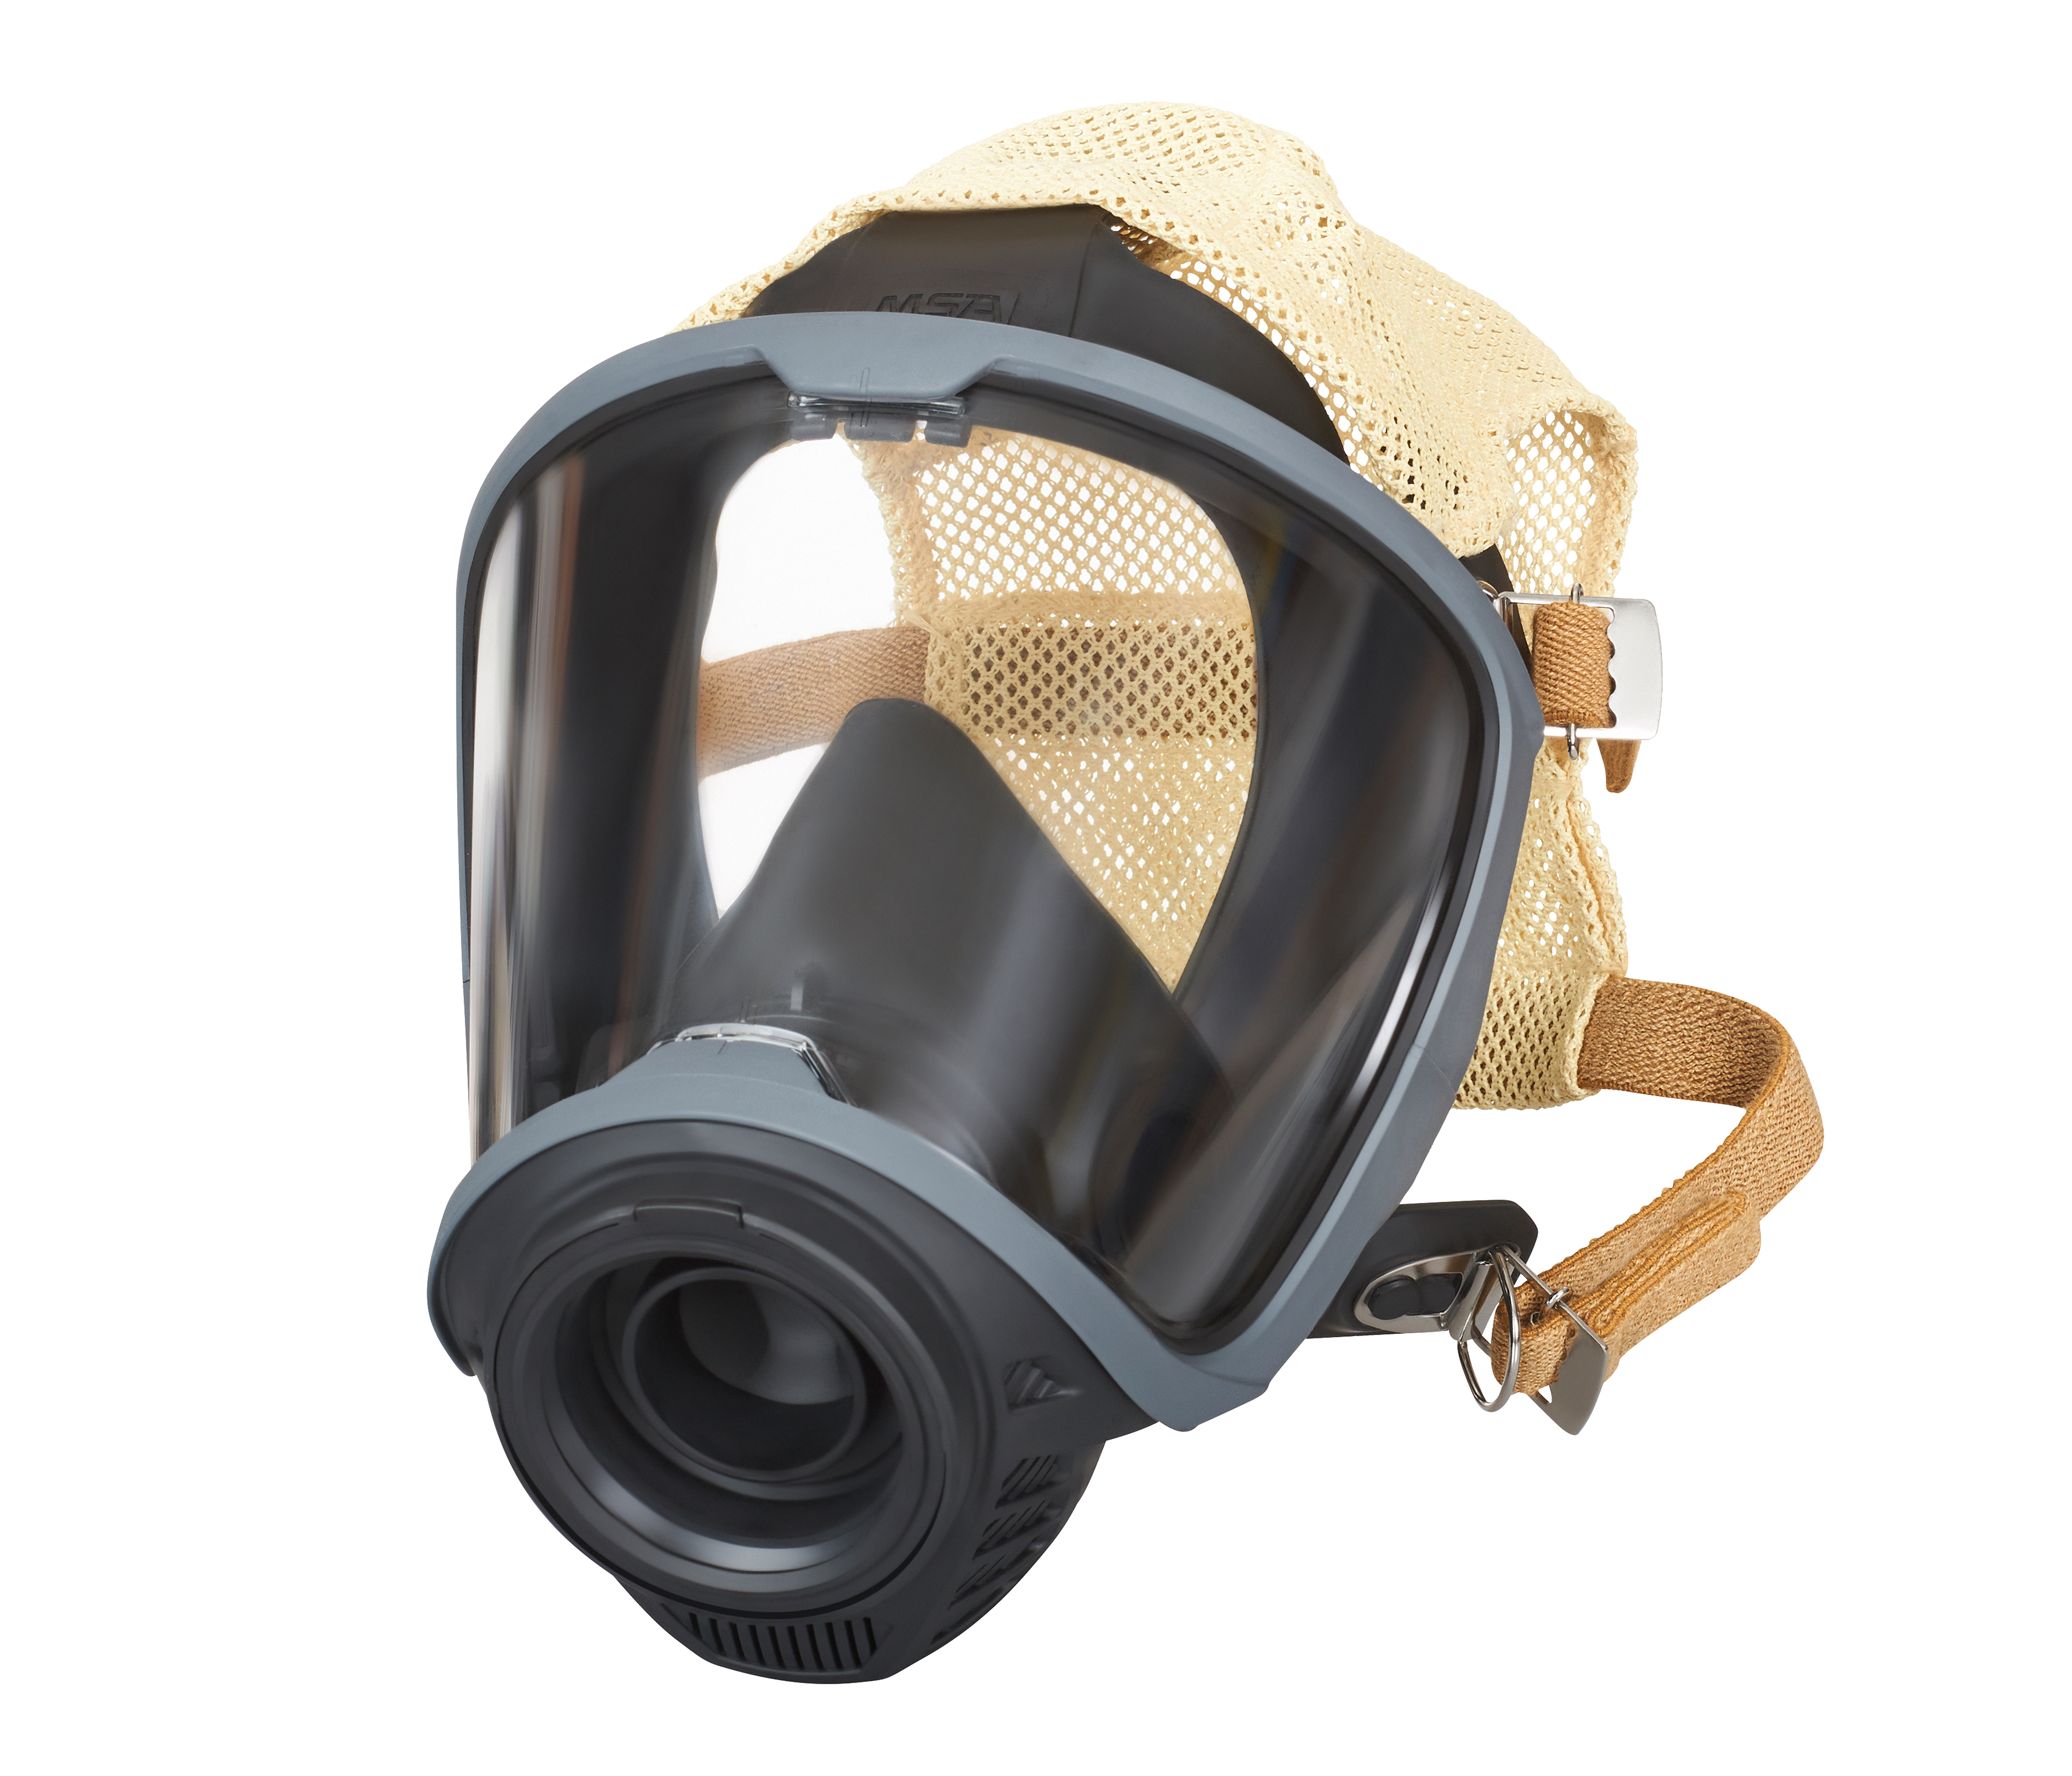 Maska pełna MSA G1 z naglowiem z siatki Kevlar